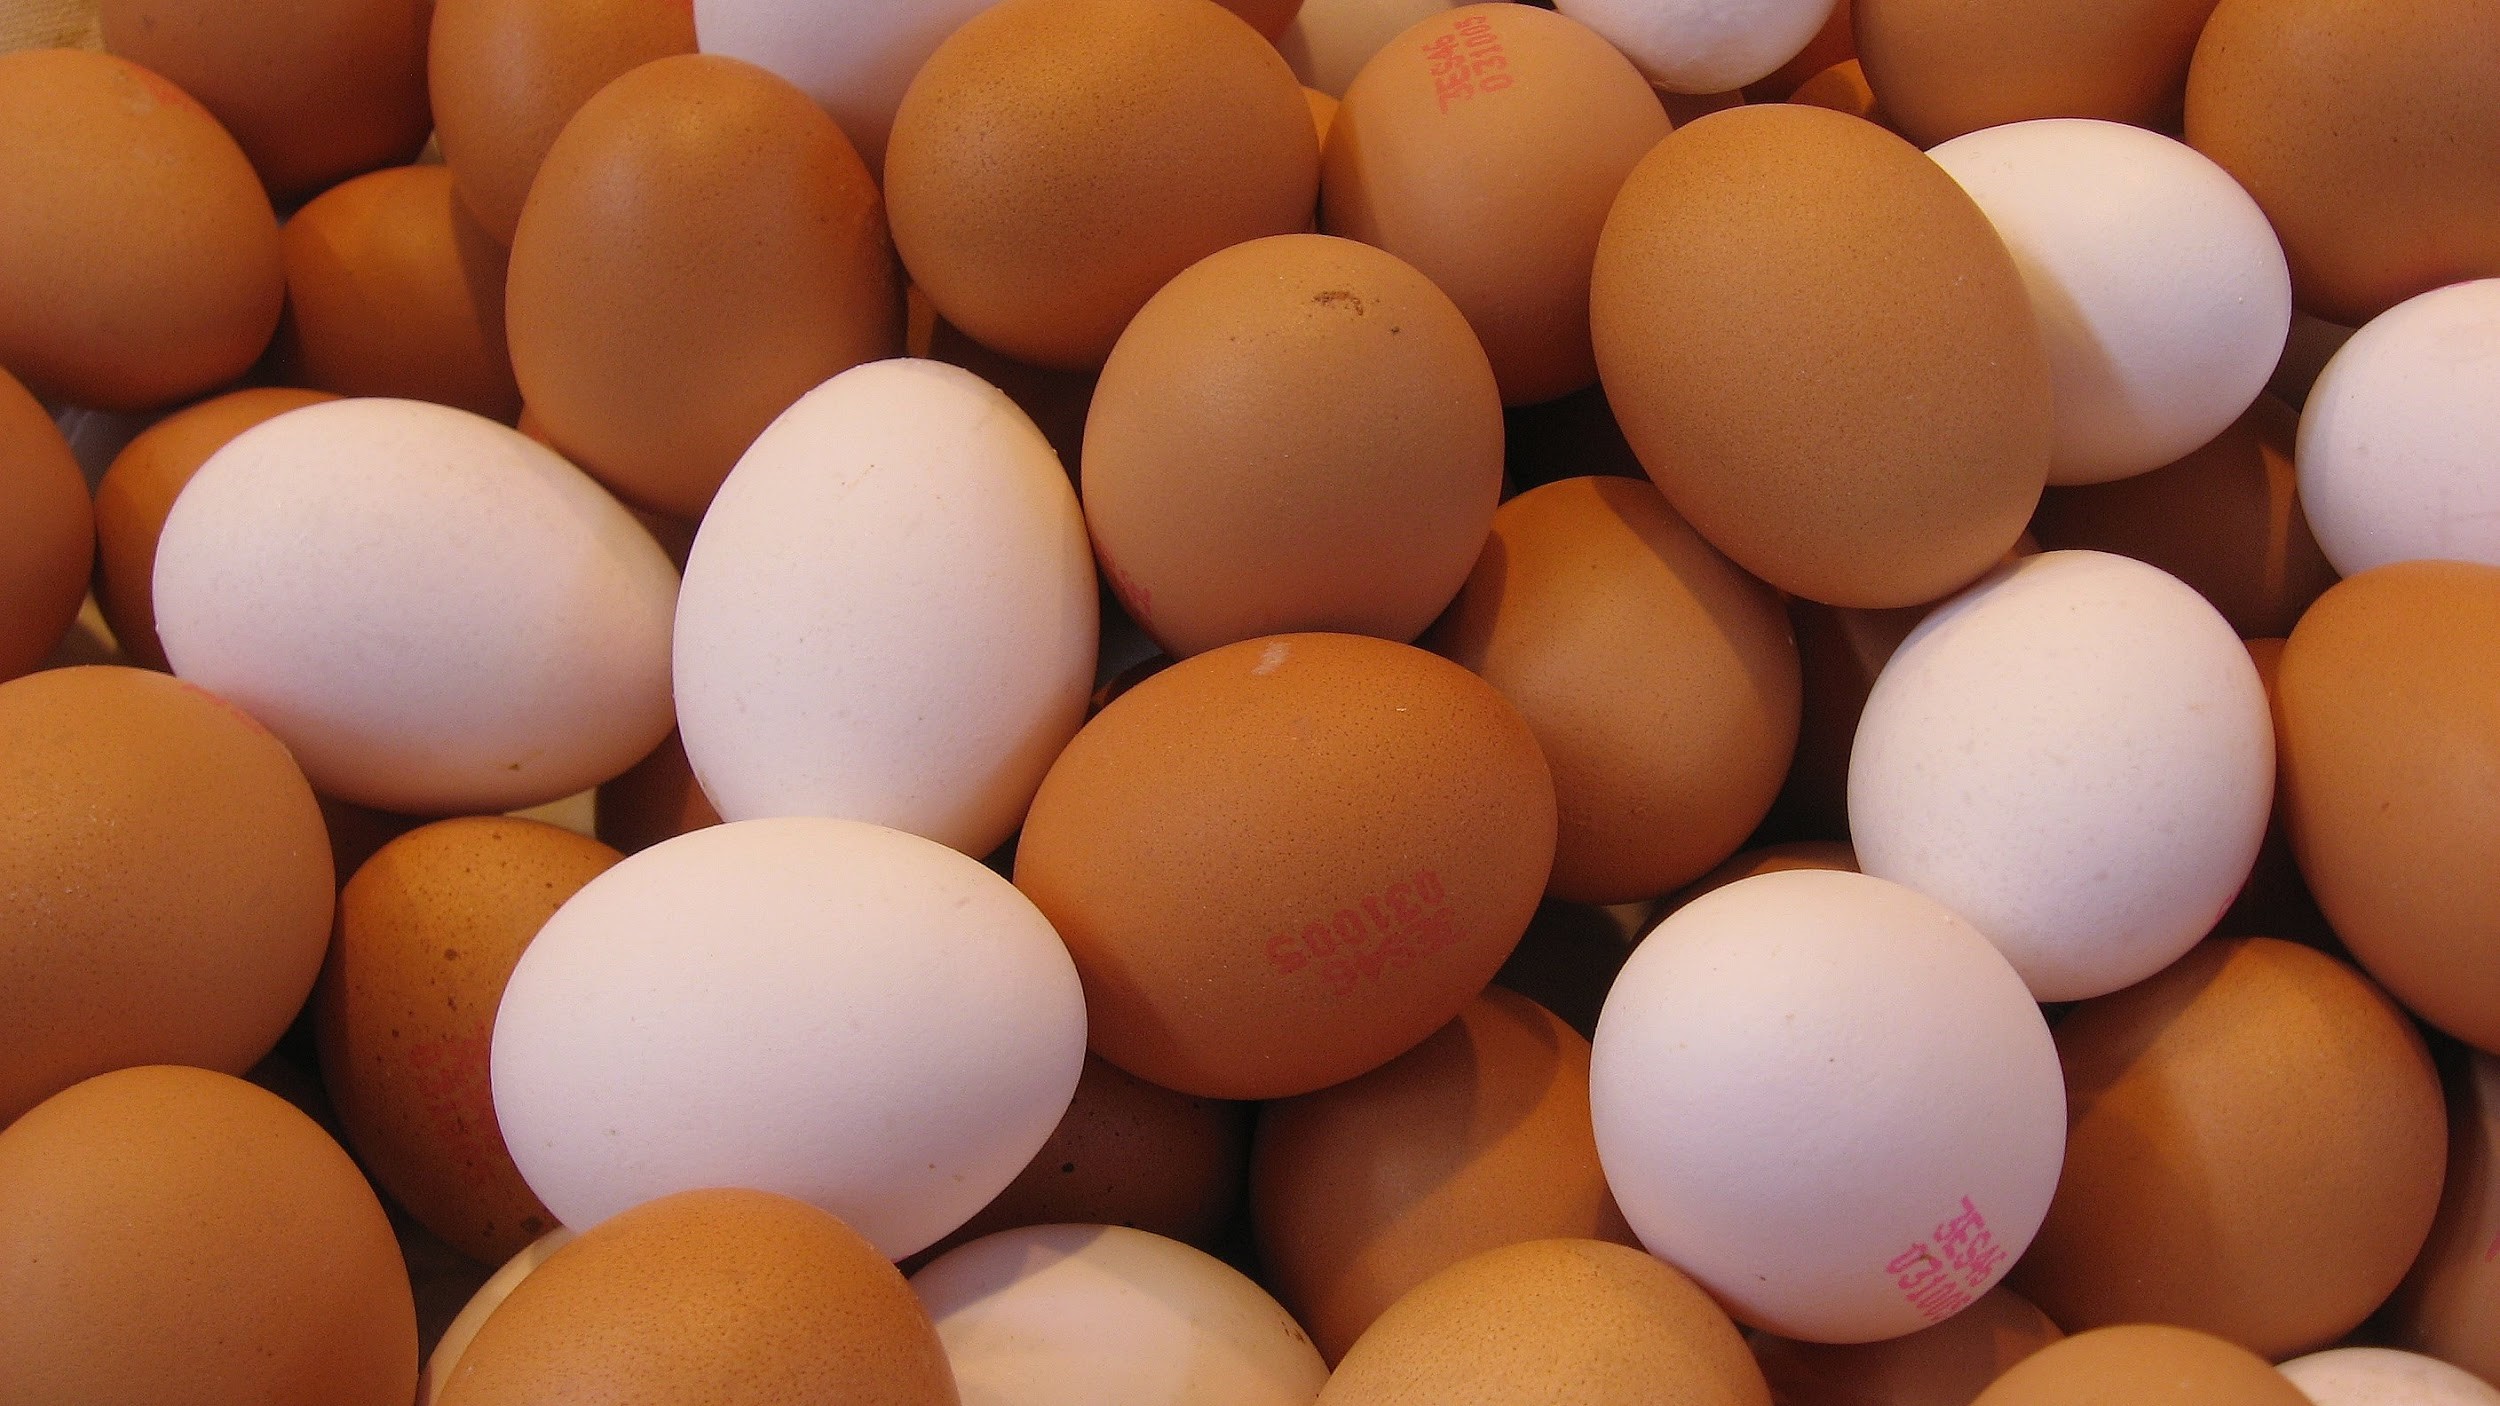 25 Most keto-friendly food: Eggs